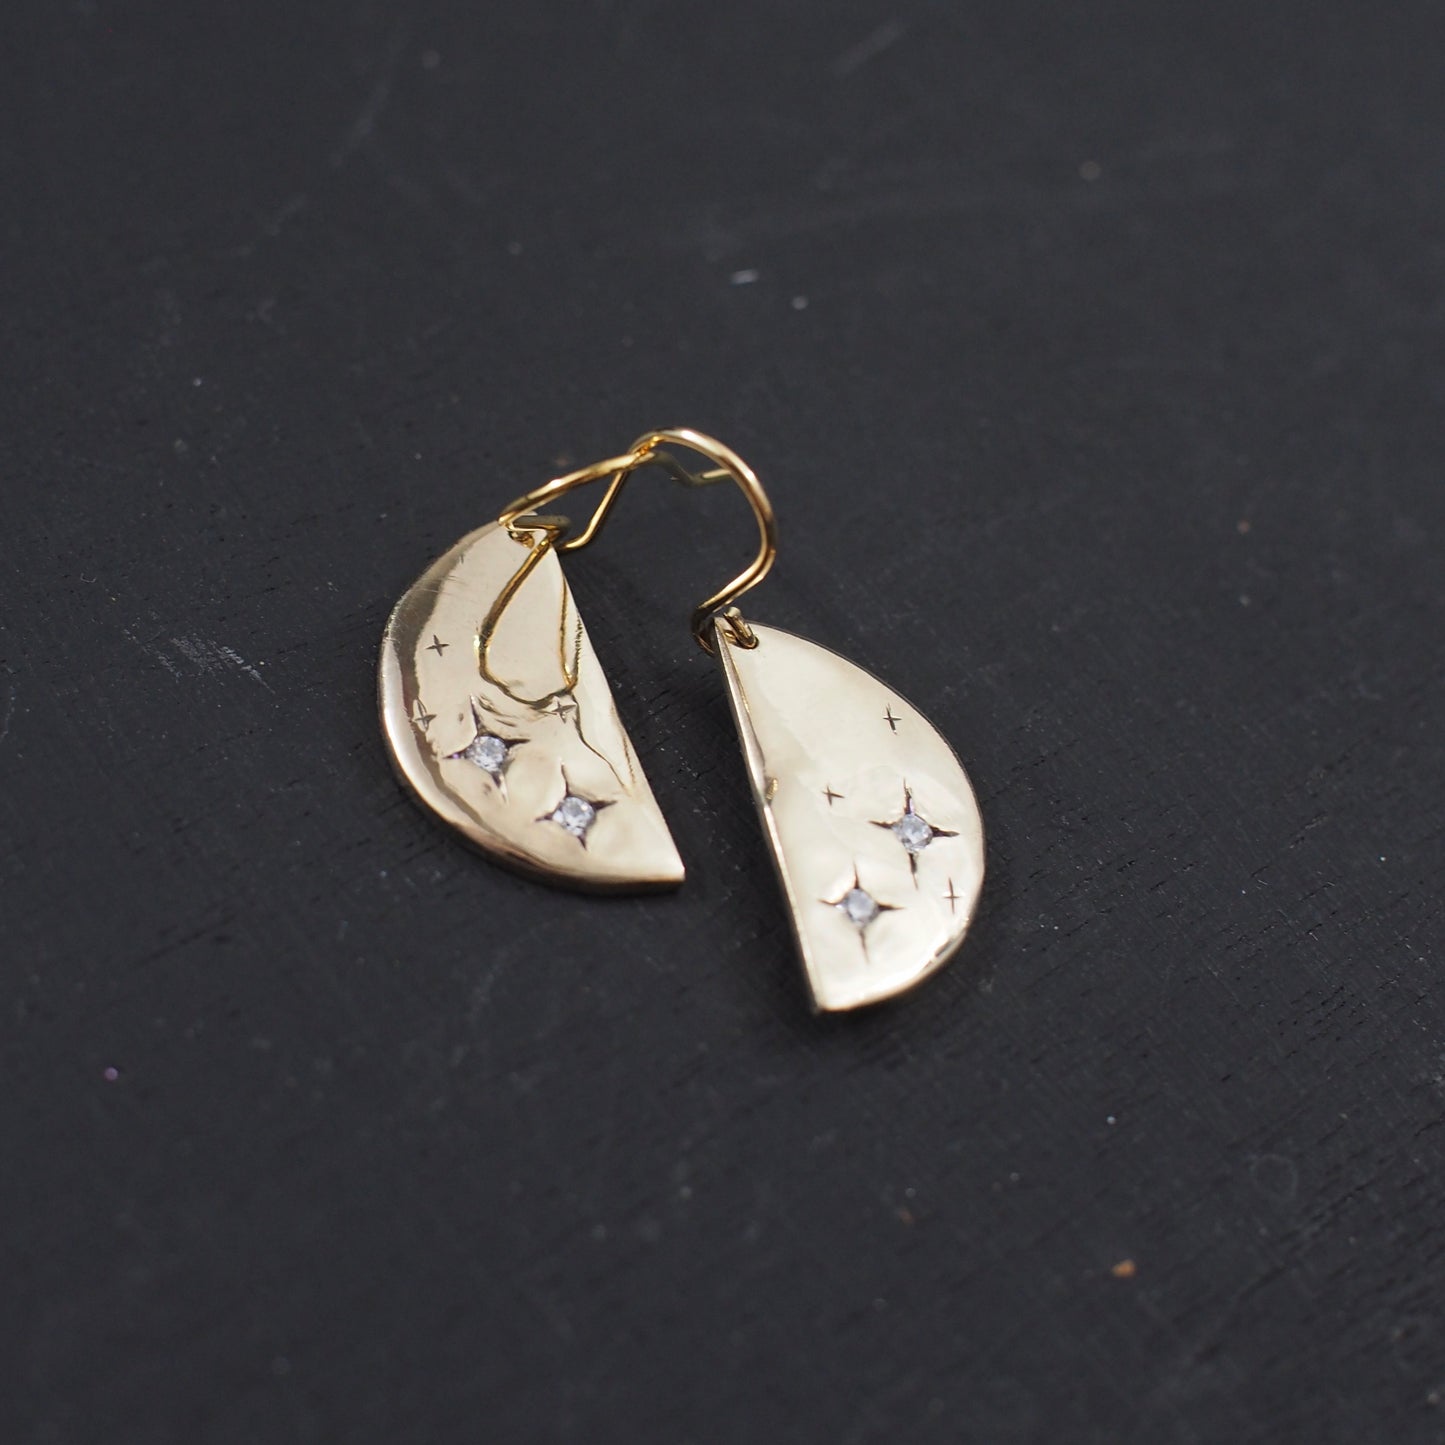 Stardust Half Moon Earrings - One of a Kind